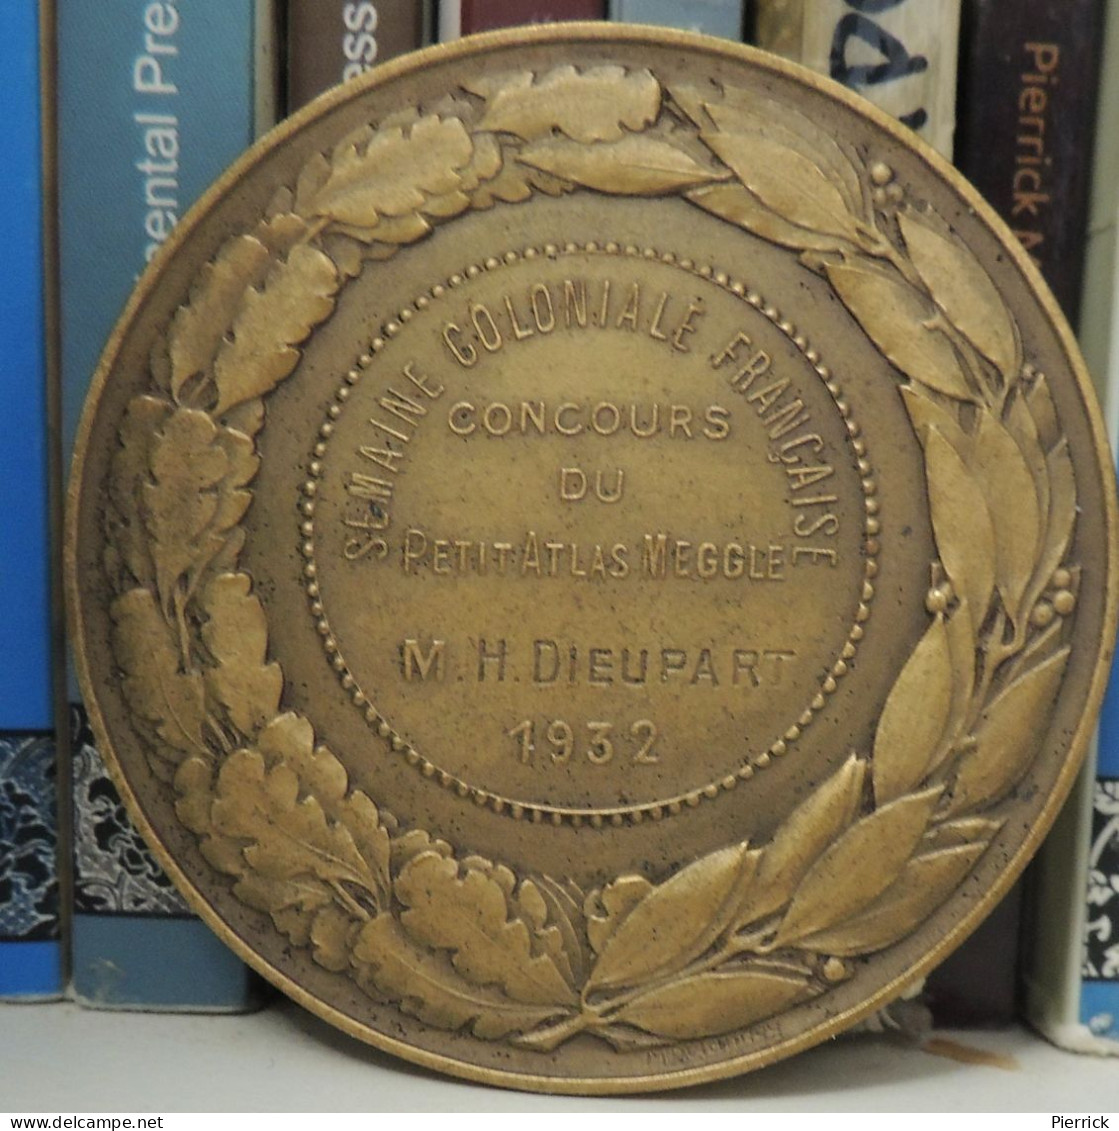 Médaille Semaine Coloniale Française Du Petit Atlas Français Megglé, Bronze, L. Desvignes 1932 - Professionnels / De Société